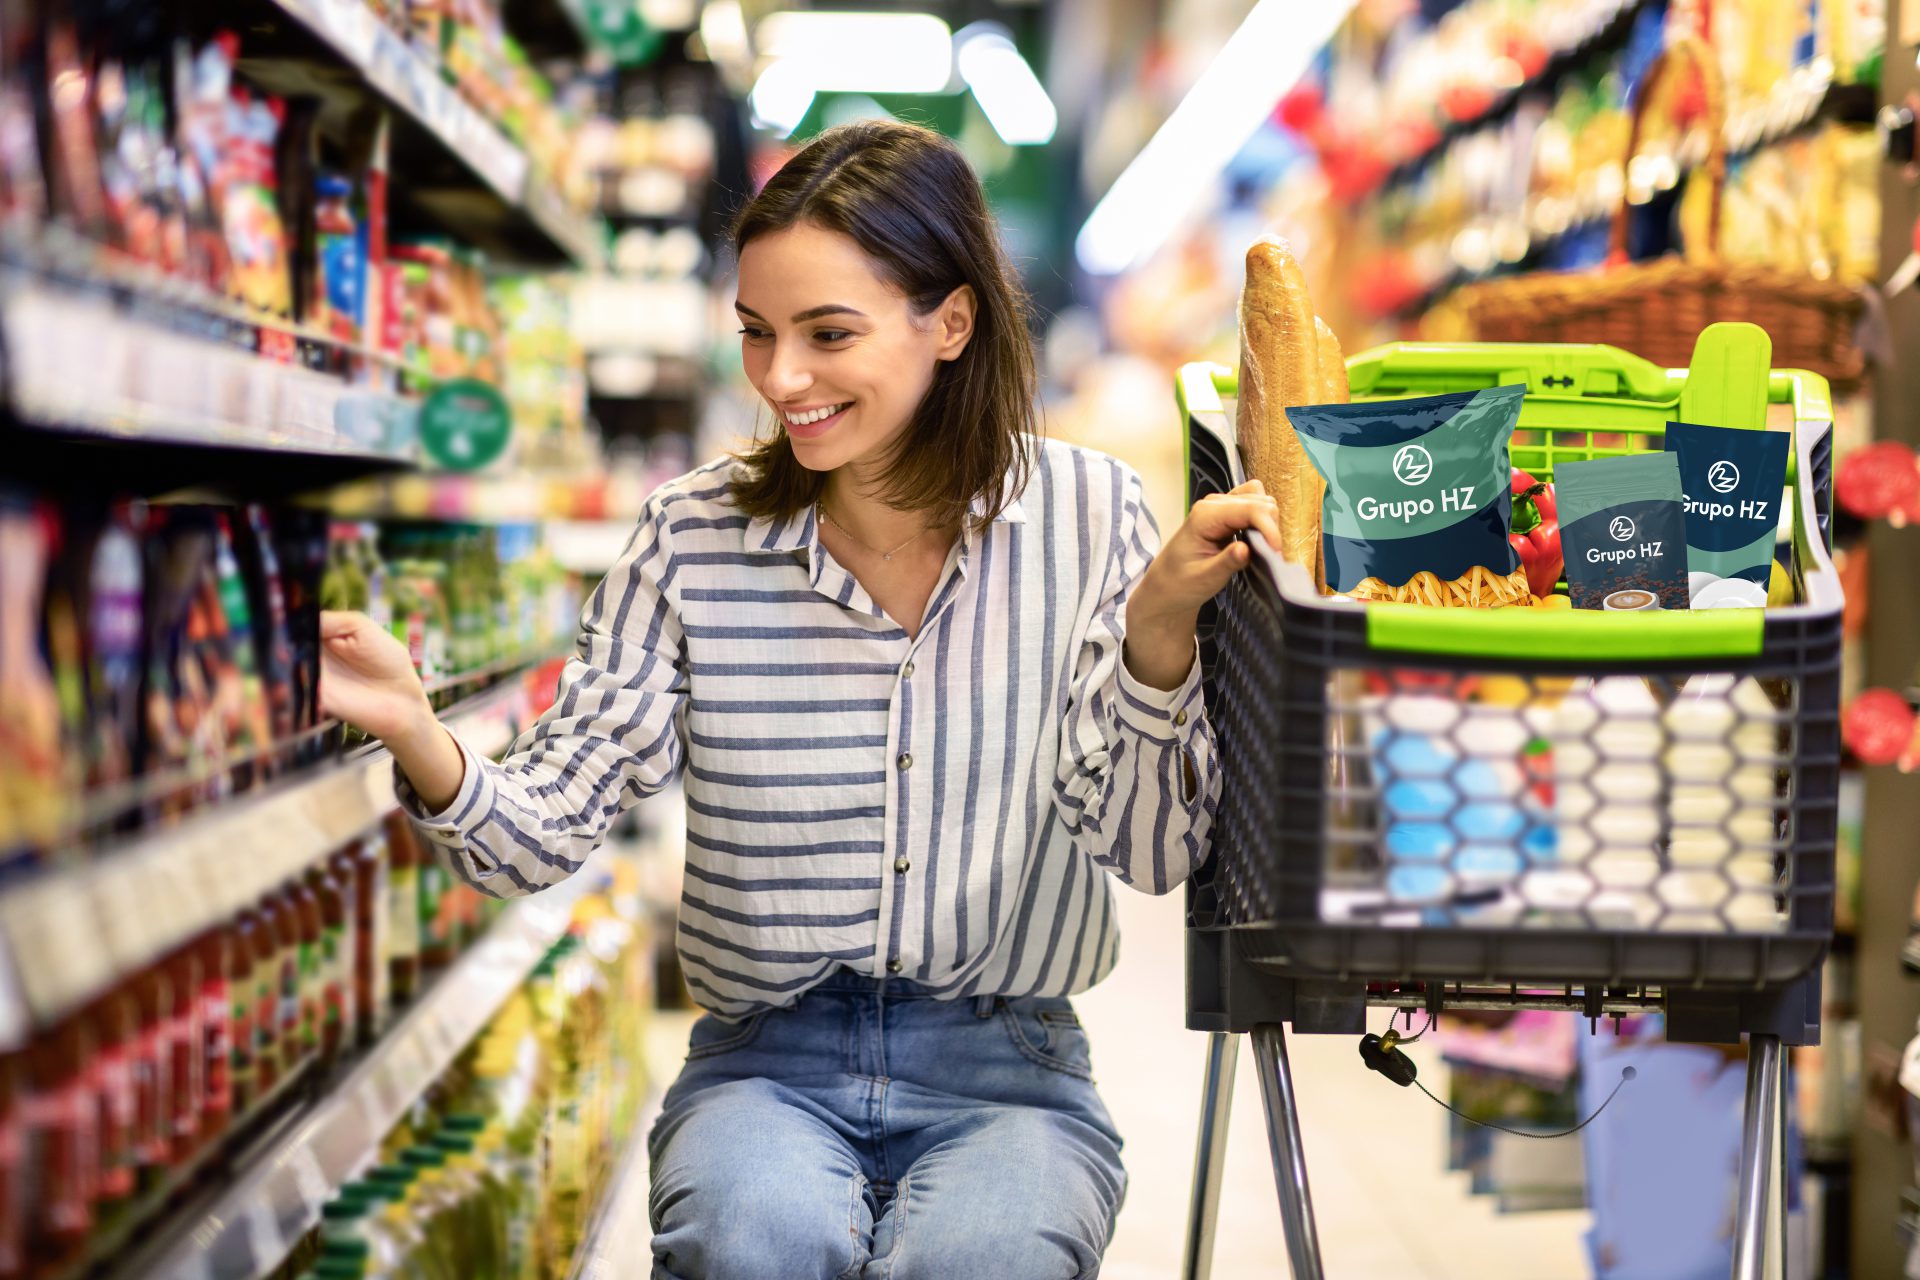 En la imagen se muestra una señora agachada agarrando productos en un supermercado con el carrito lleno de envoltorios de Grupo HZ